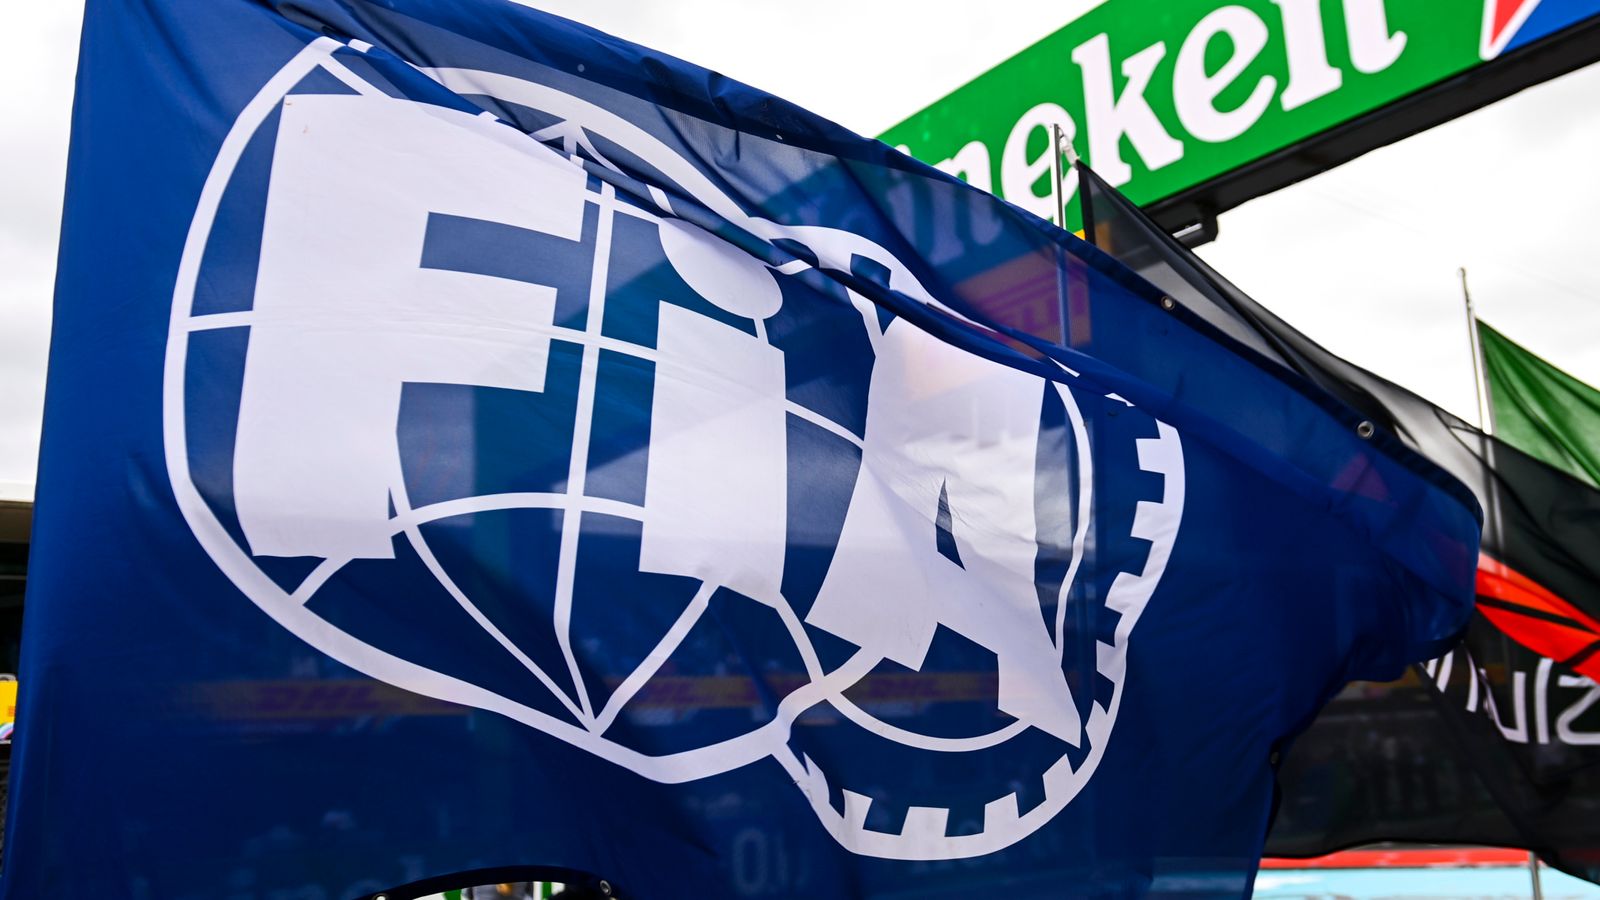 Límite presupuestario de F1: la FIA retrasa la publicación de certificados de cumplimiento para cualquier incumplimiento del equipo hasta el 10 de octubre